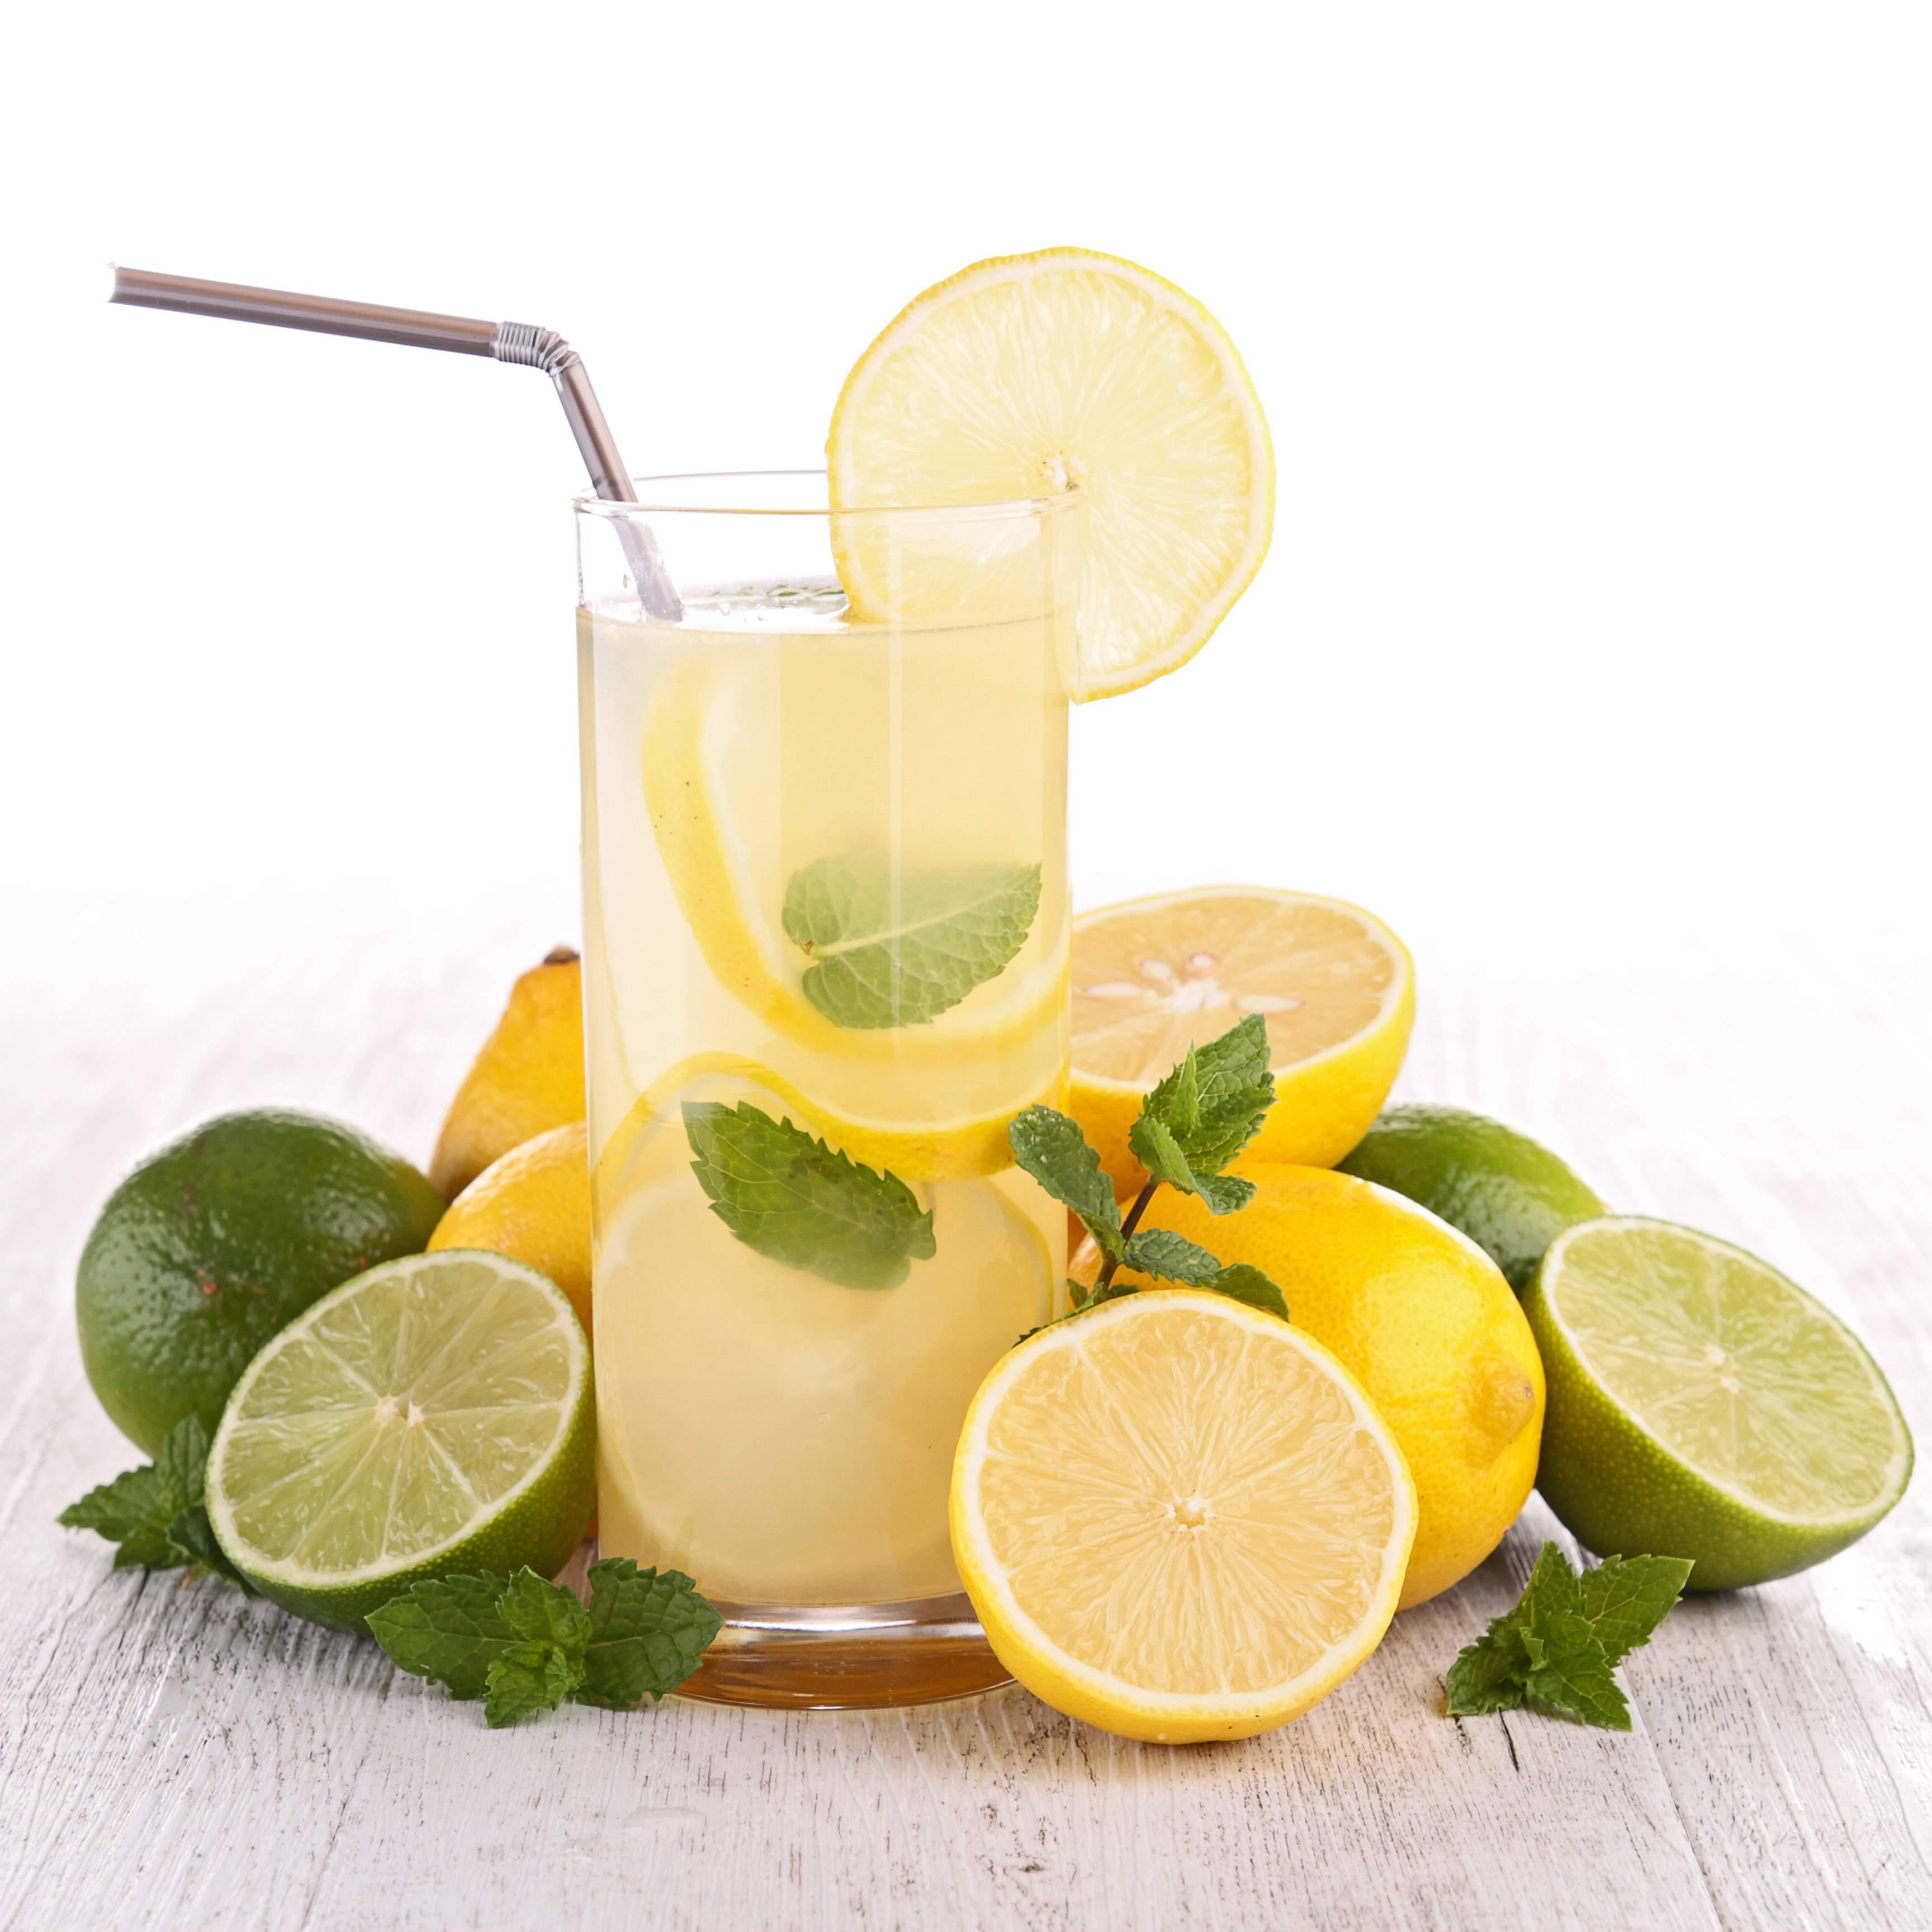 Limunov sok trebali biste uvesti u prehranu kad god se želite riješiti viška vode - Avaz